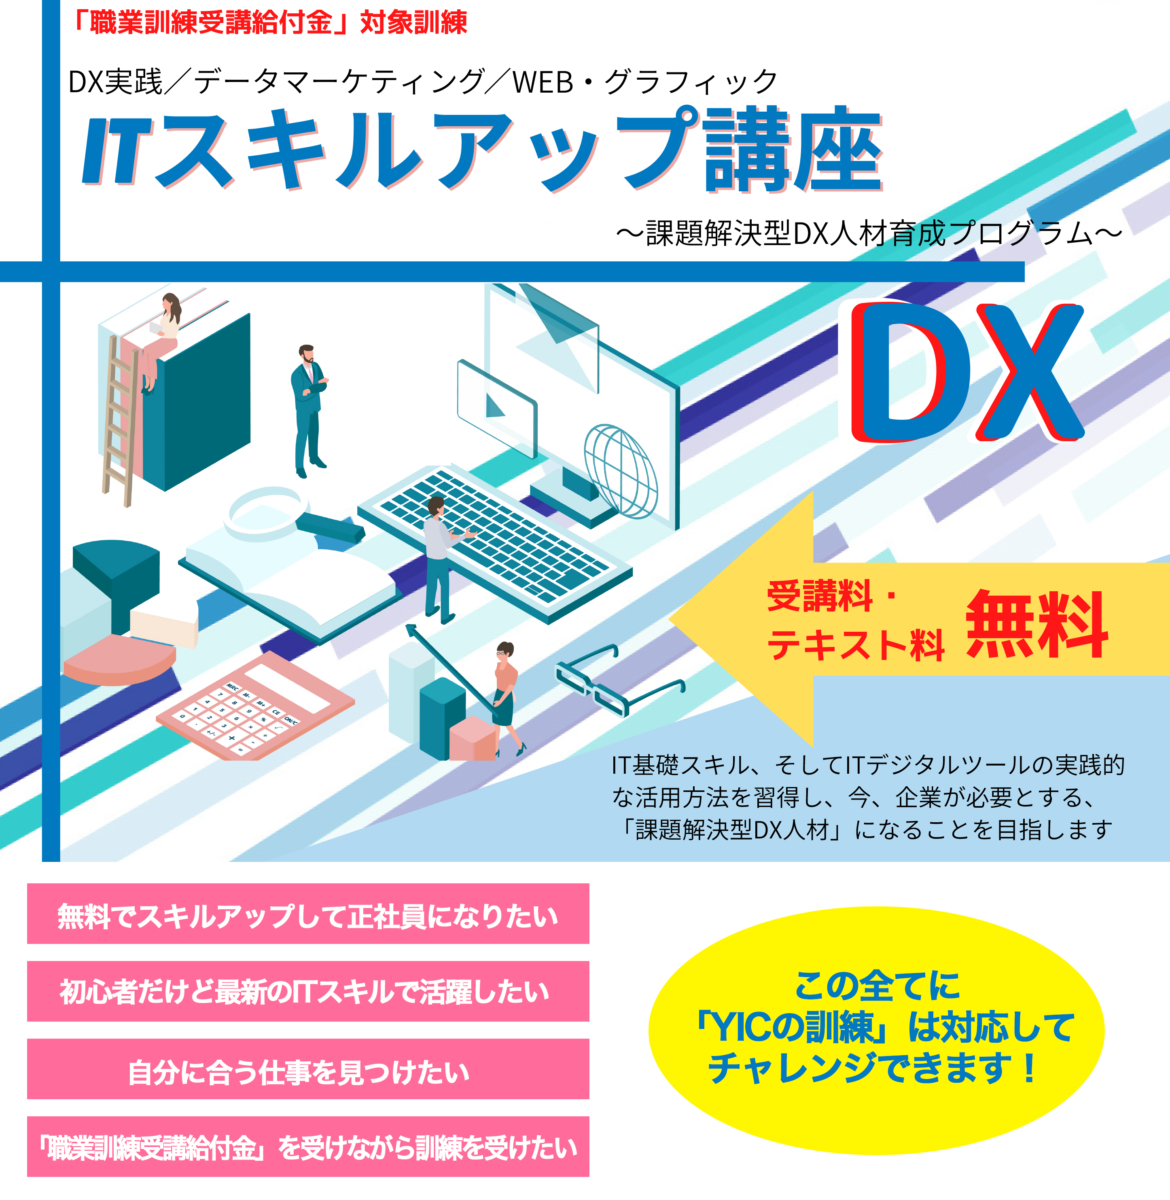 【無料説明会】8・9月に山口県でDX人材をめざす「ITスキルアップ講座」の説明会を開催します！